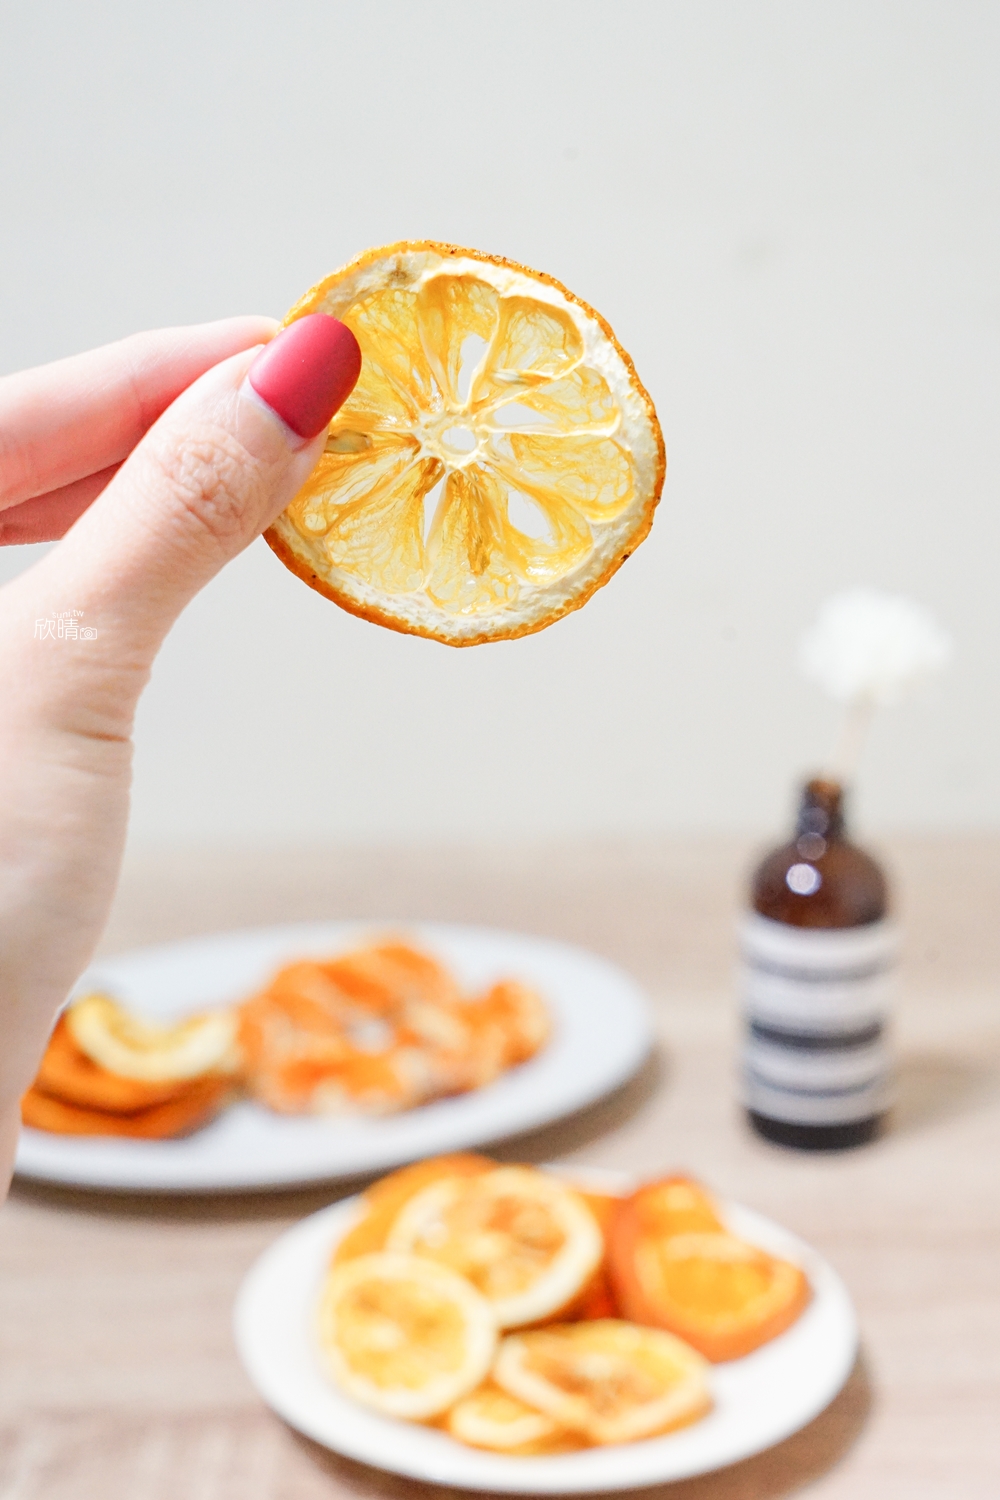 氣炸鍋果乾食譜｜兩小時做出檸檬乾、橘子乾！